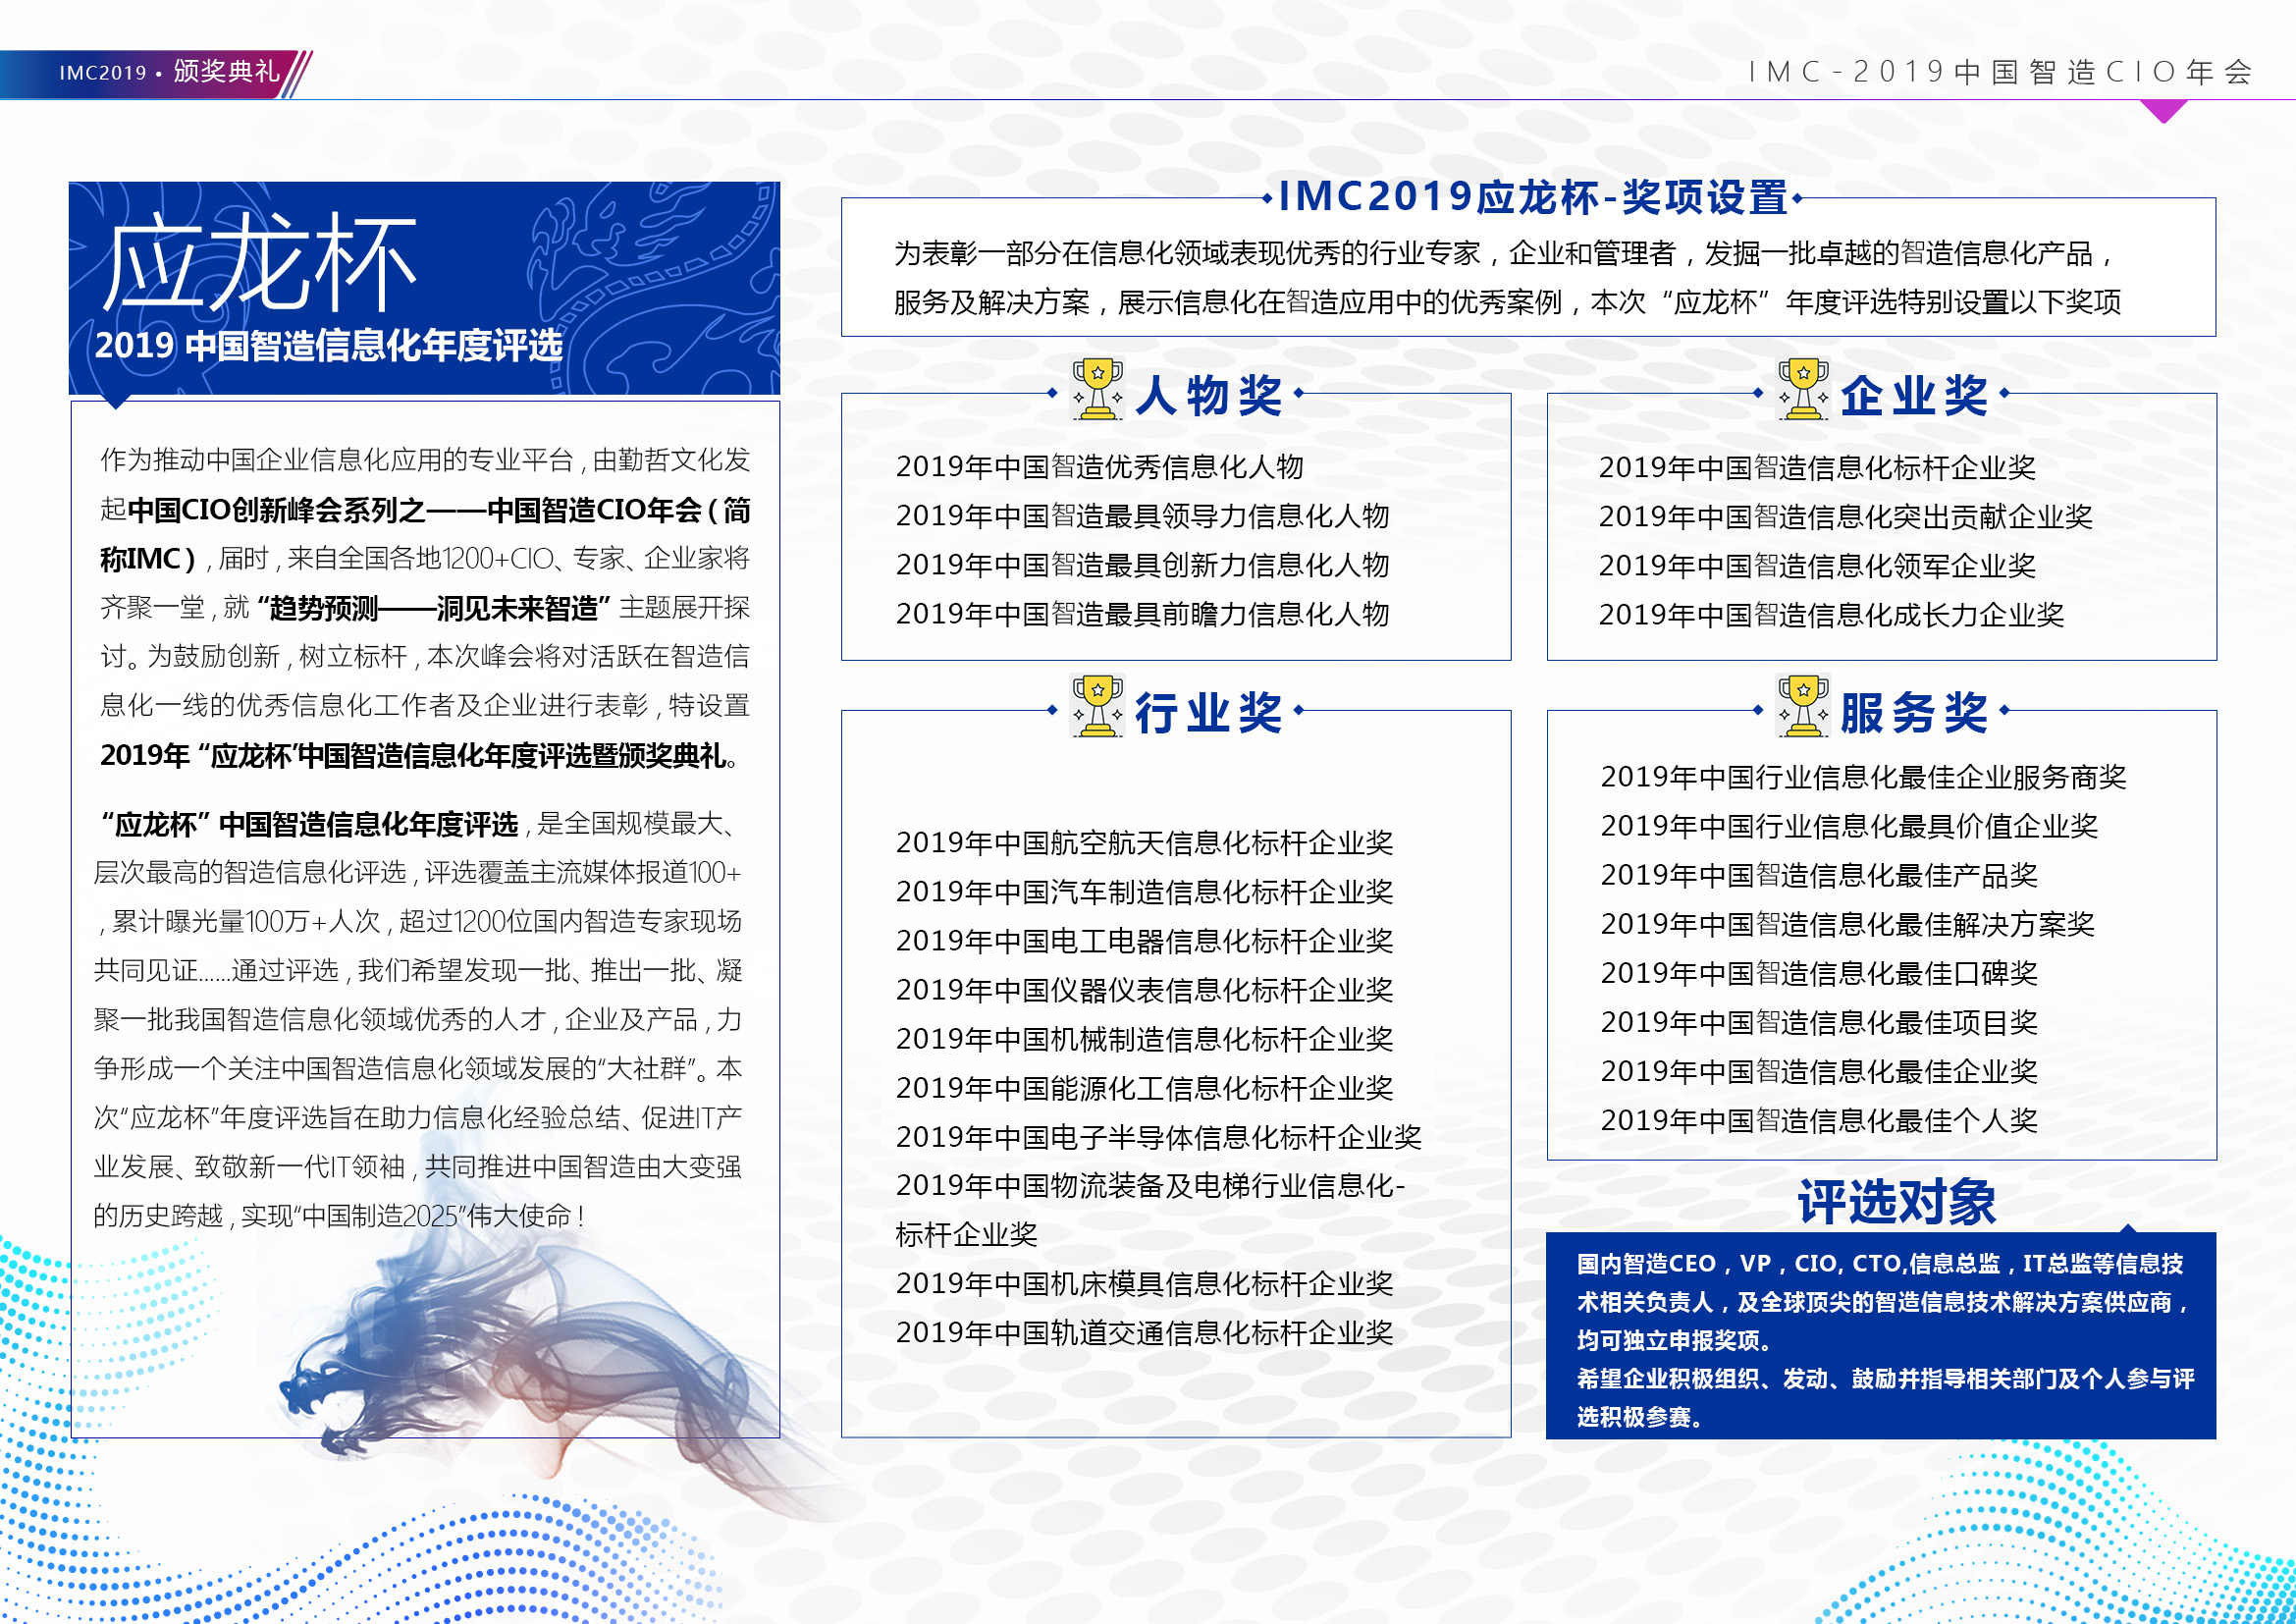 IMC 2019中国智造CIO年会正式启动